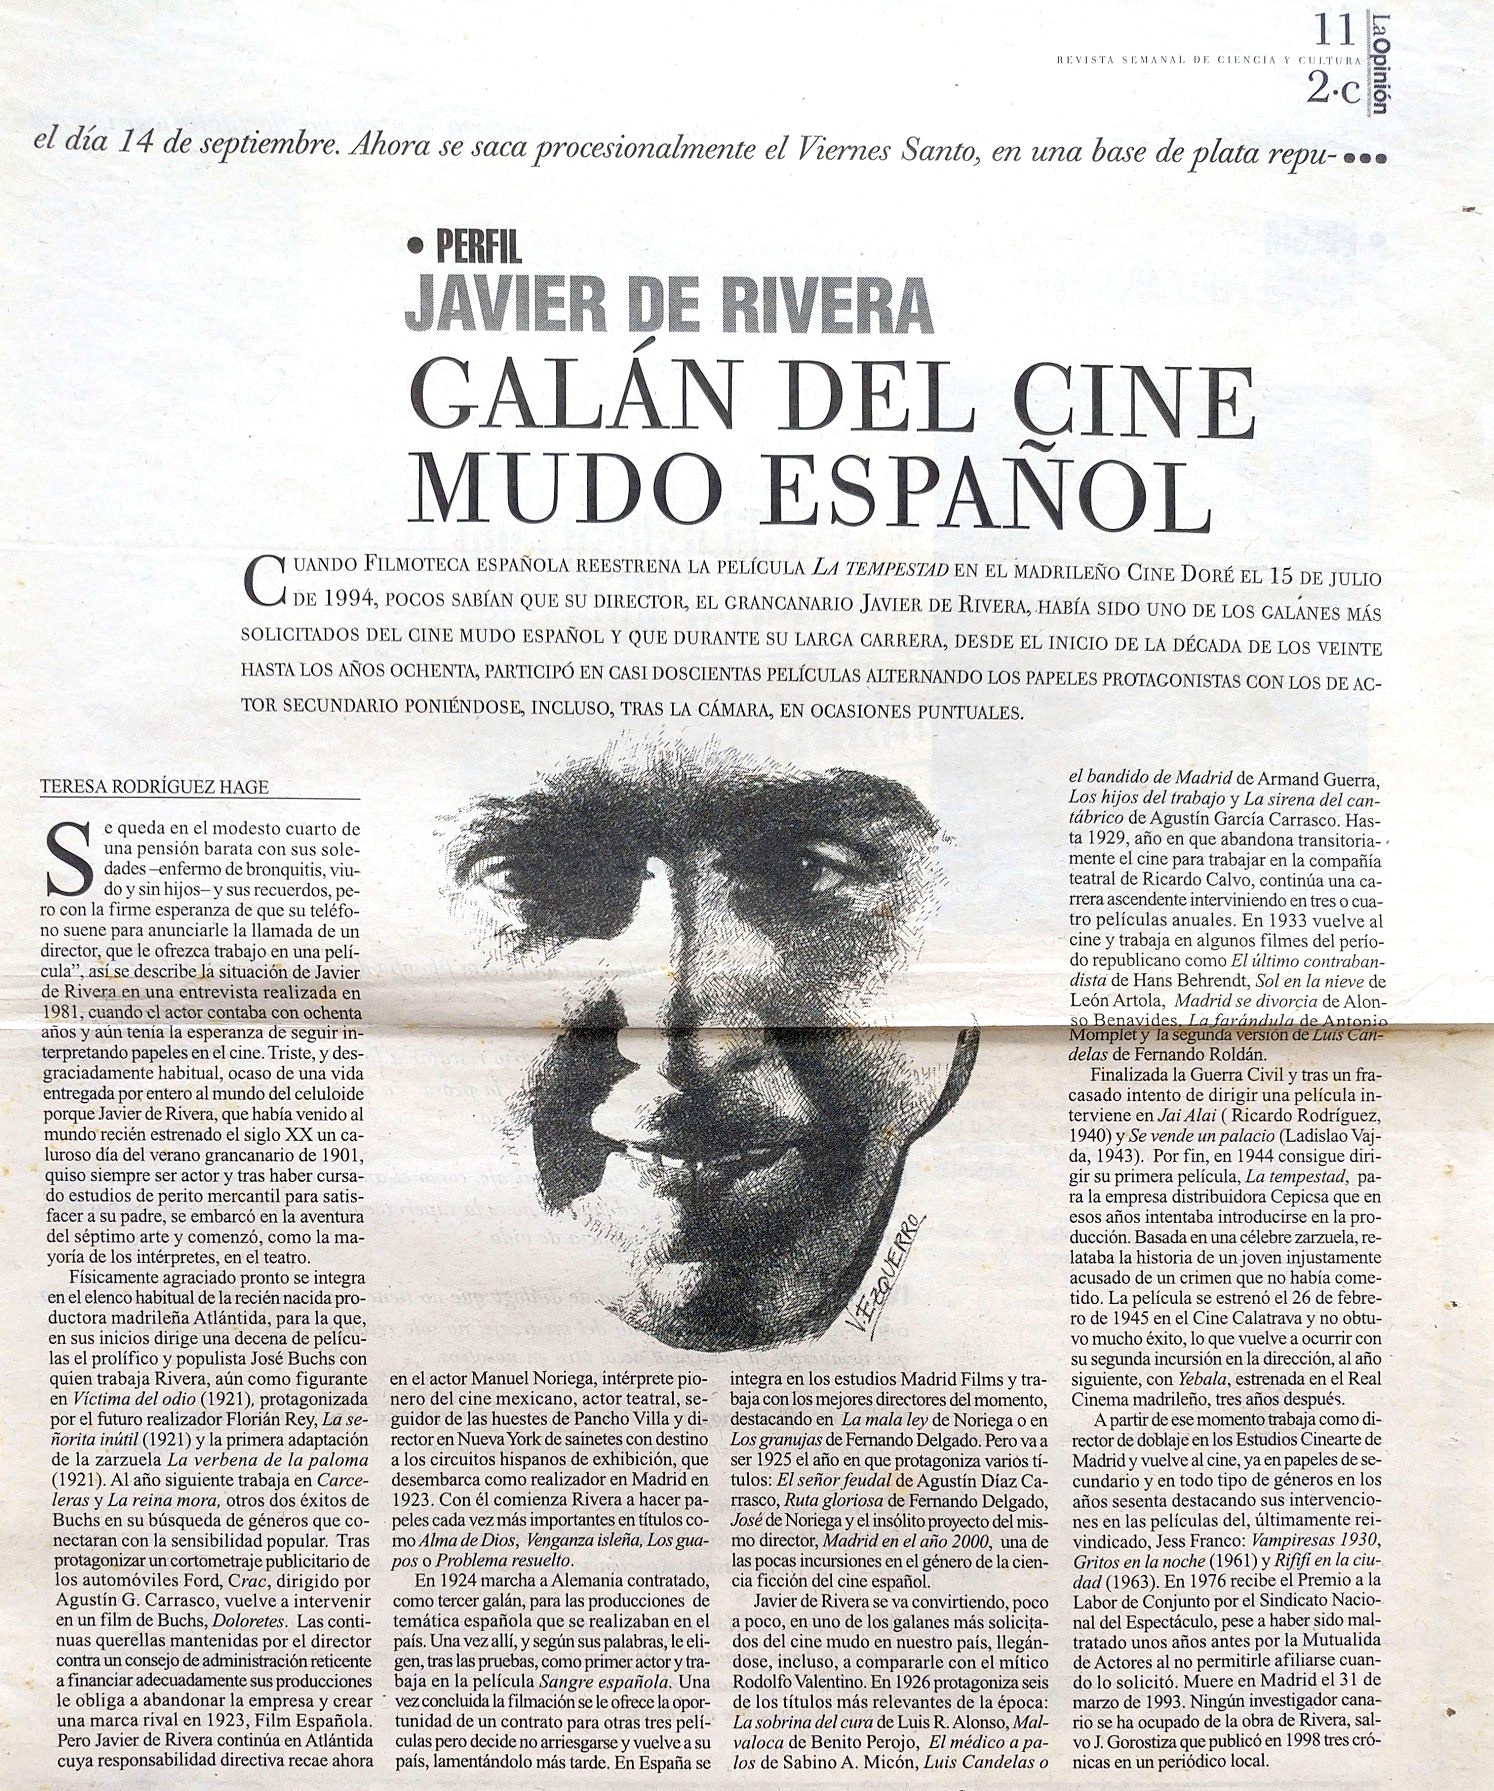 20000101-La-Opinión-Javier-de-Rivera-Galán-del-cine-mudo-español.jpg